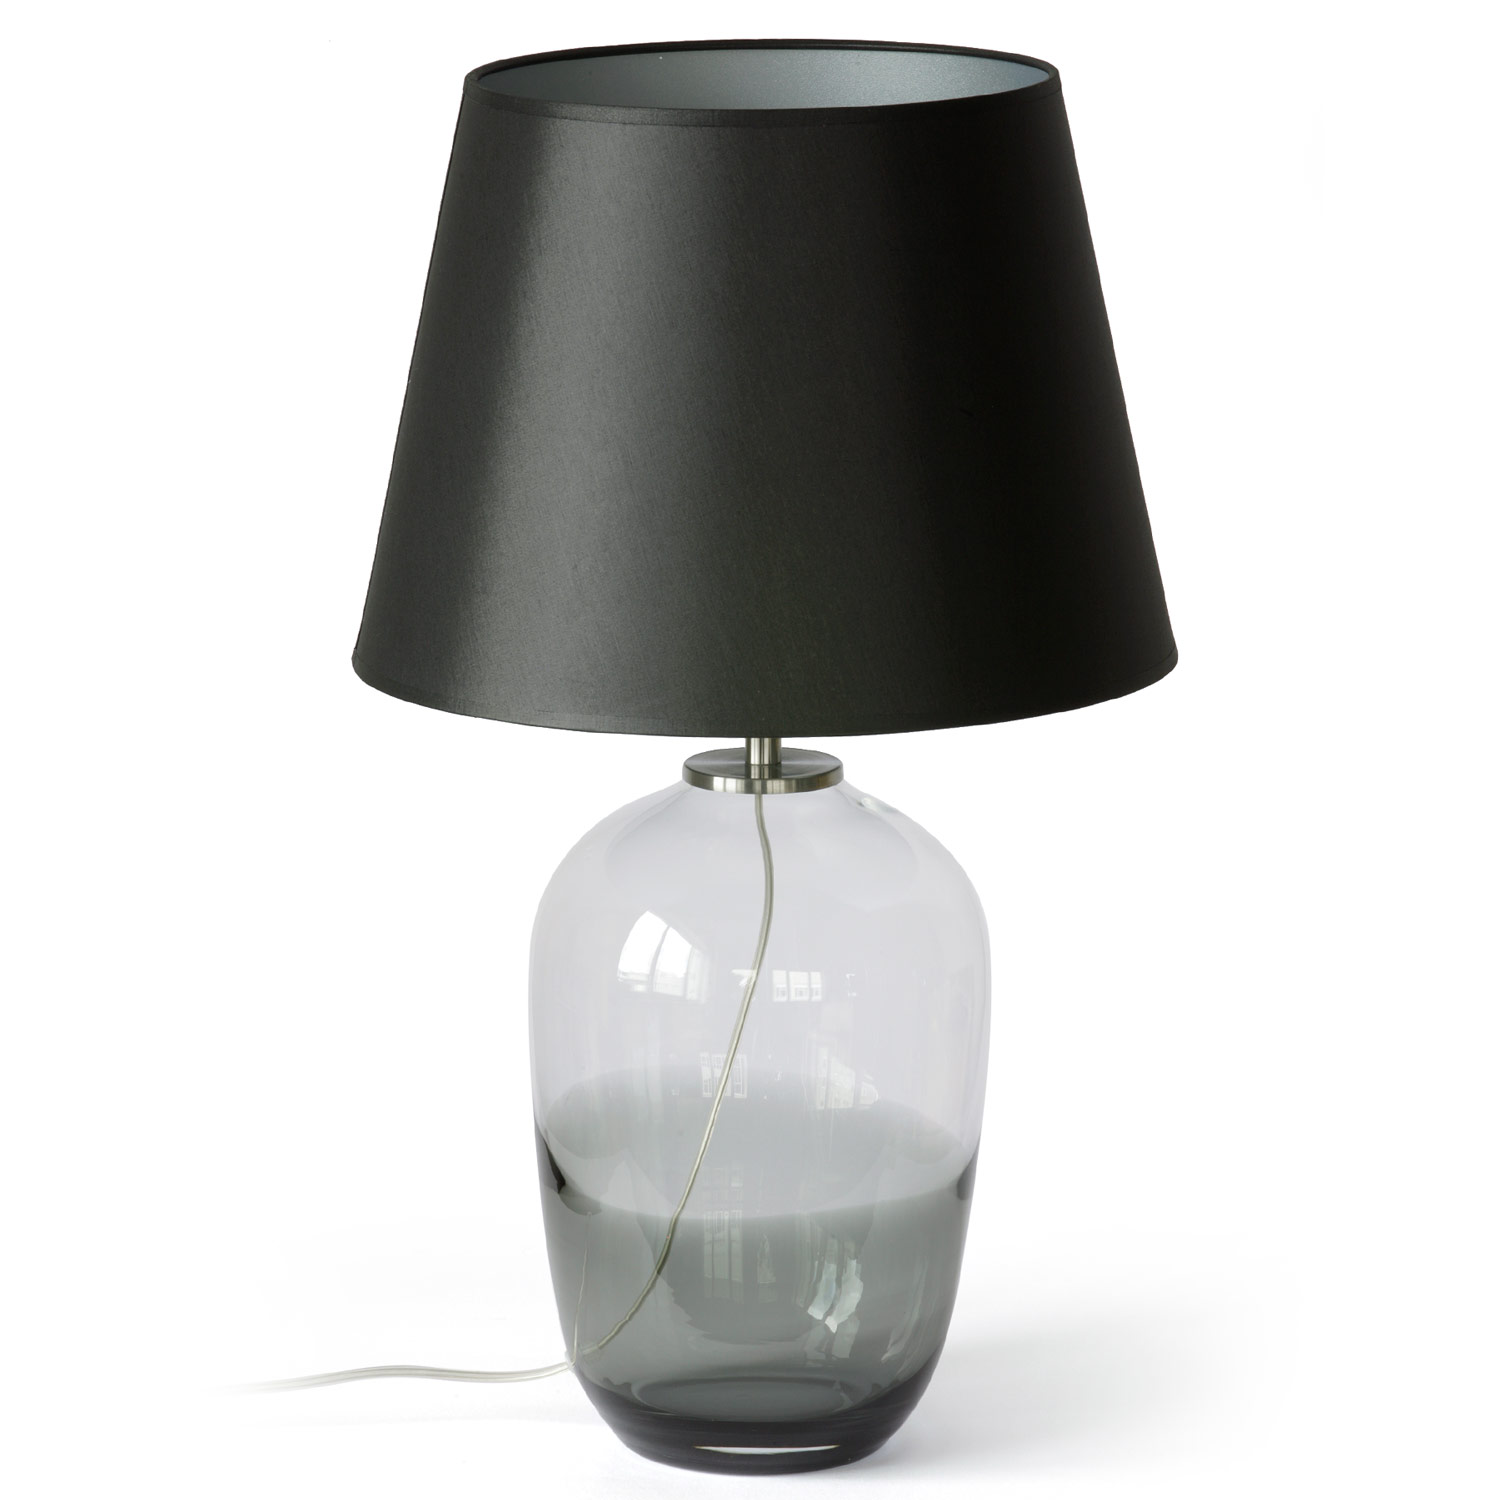 Faszinierende Glas-Vasenlampe MALI: Faszinierende Vasenlampe mit Rauchglas-Sockel, (hier kleines Modell, schwarzer Textil-Schirm)